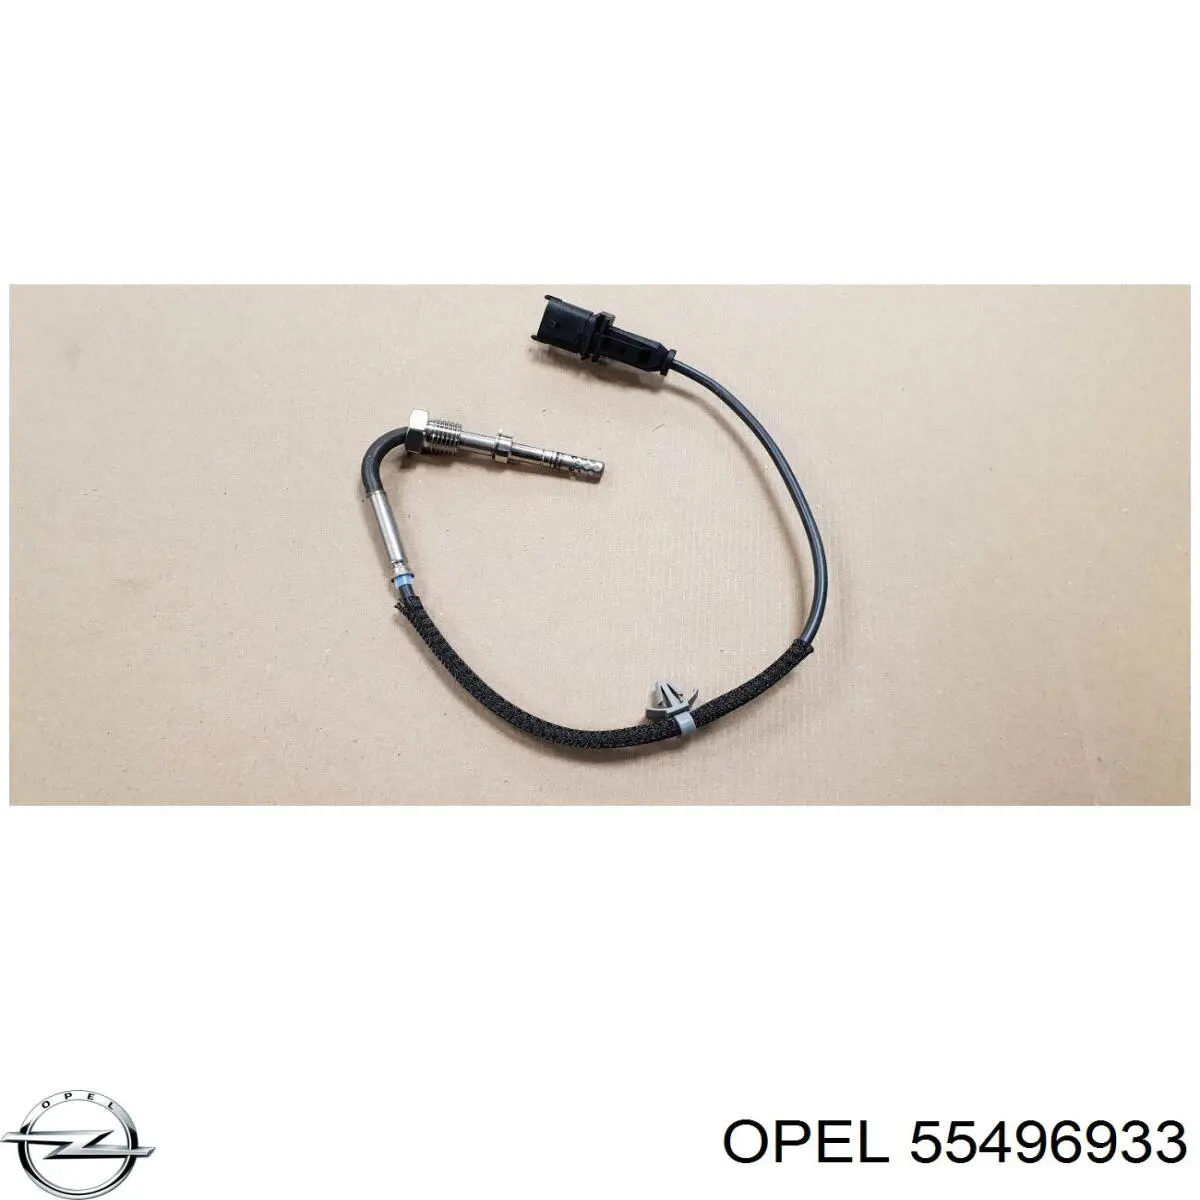 55496933 Opel sensor de temperatura dos gases de escape (ge, depois de filtro de partículas diesel)